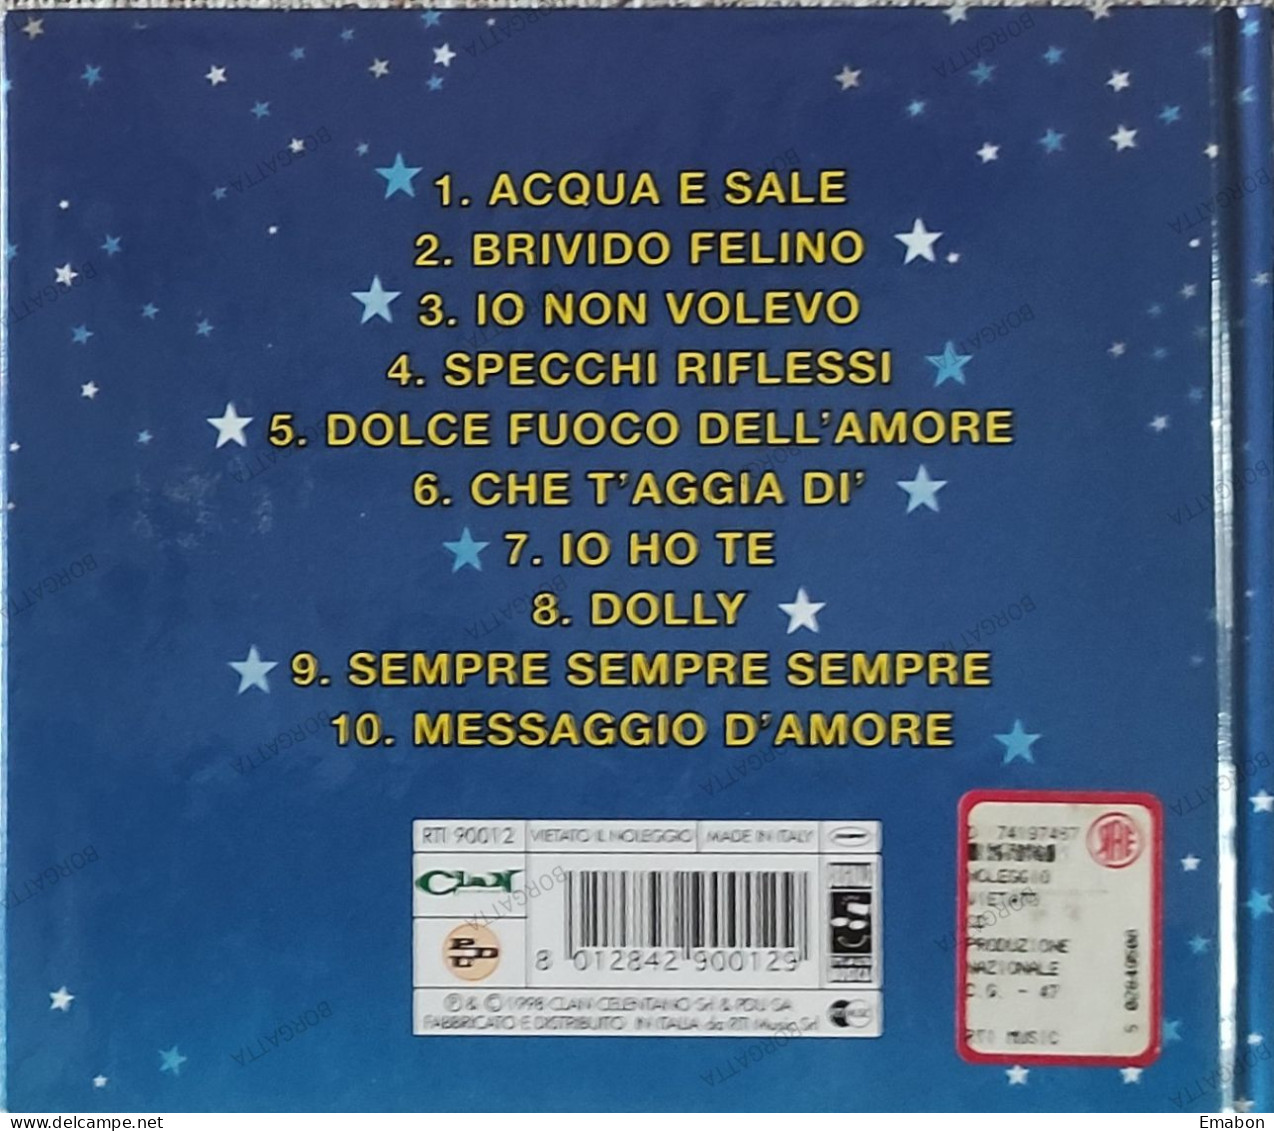 BORGATTA - ITALIANA  - Cd E Libretto MINA E CELENTANO - MOLLY E DESTINO SOLITARIO - CLAN 1998 -  USATO In Buono Stato - Altri - Musica Italiana